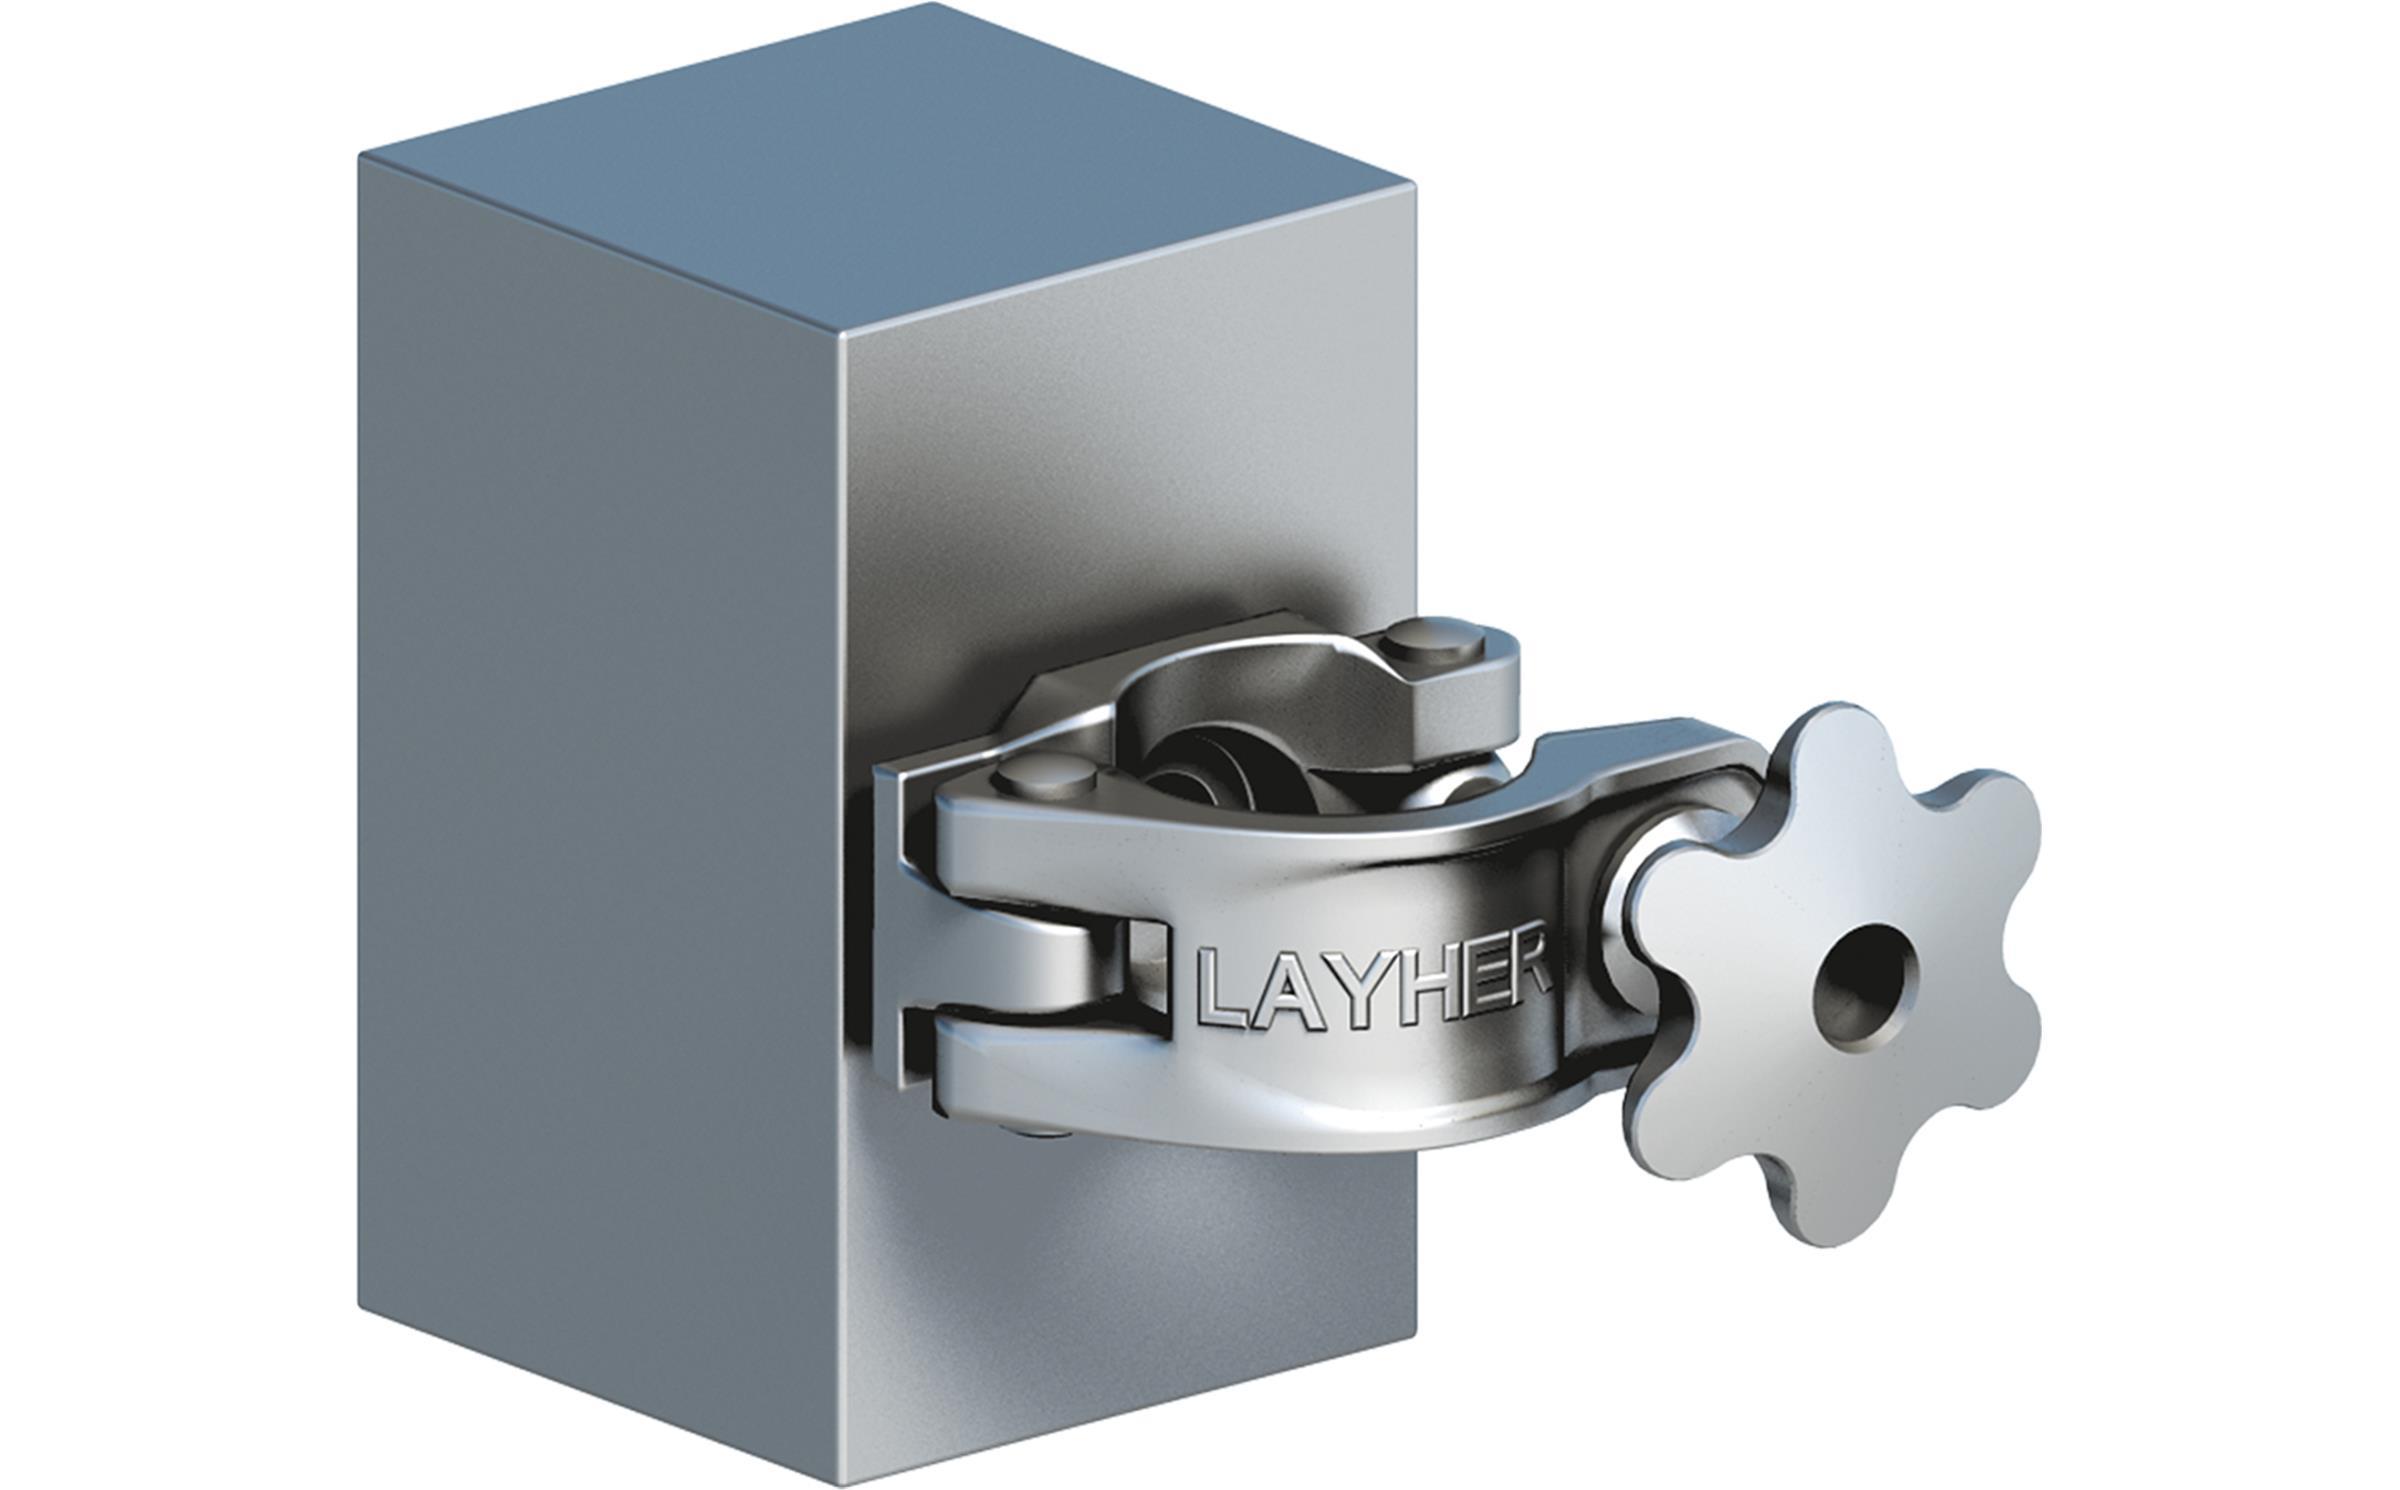 Layher - Ballast 10kg